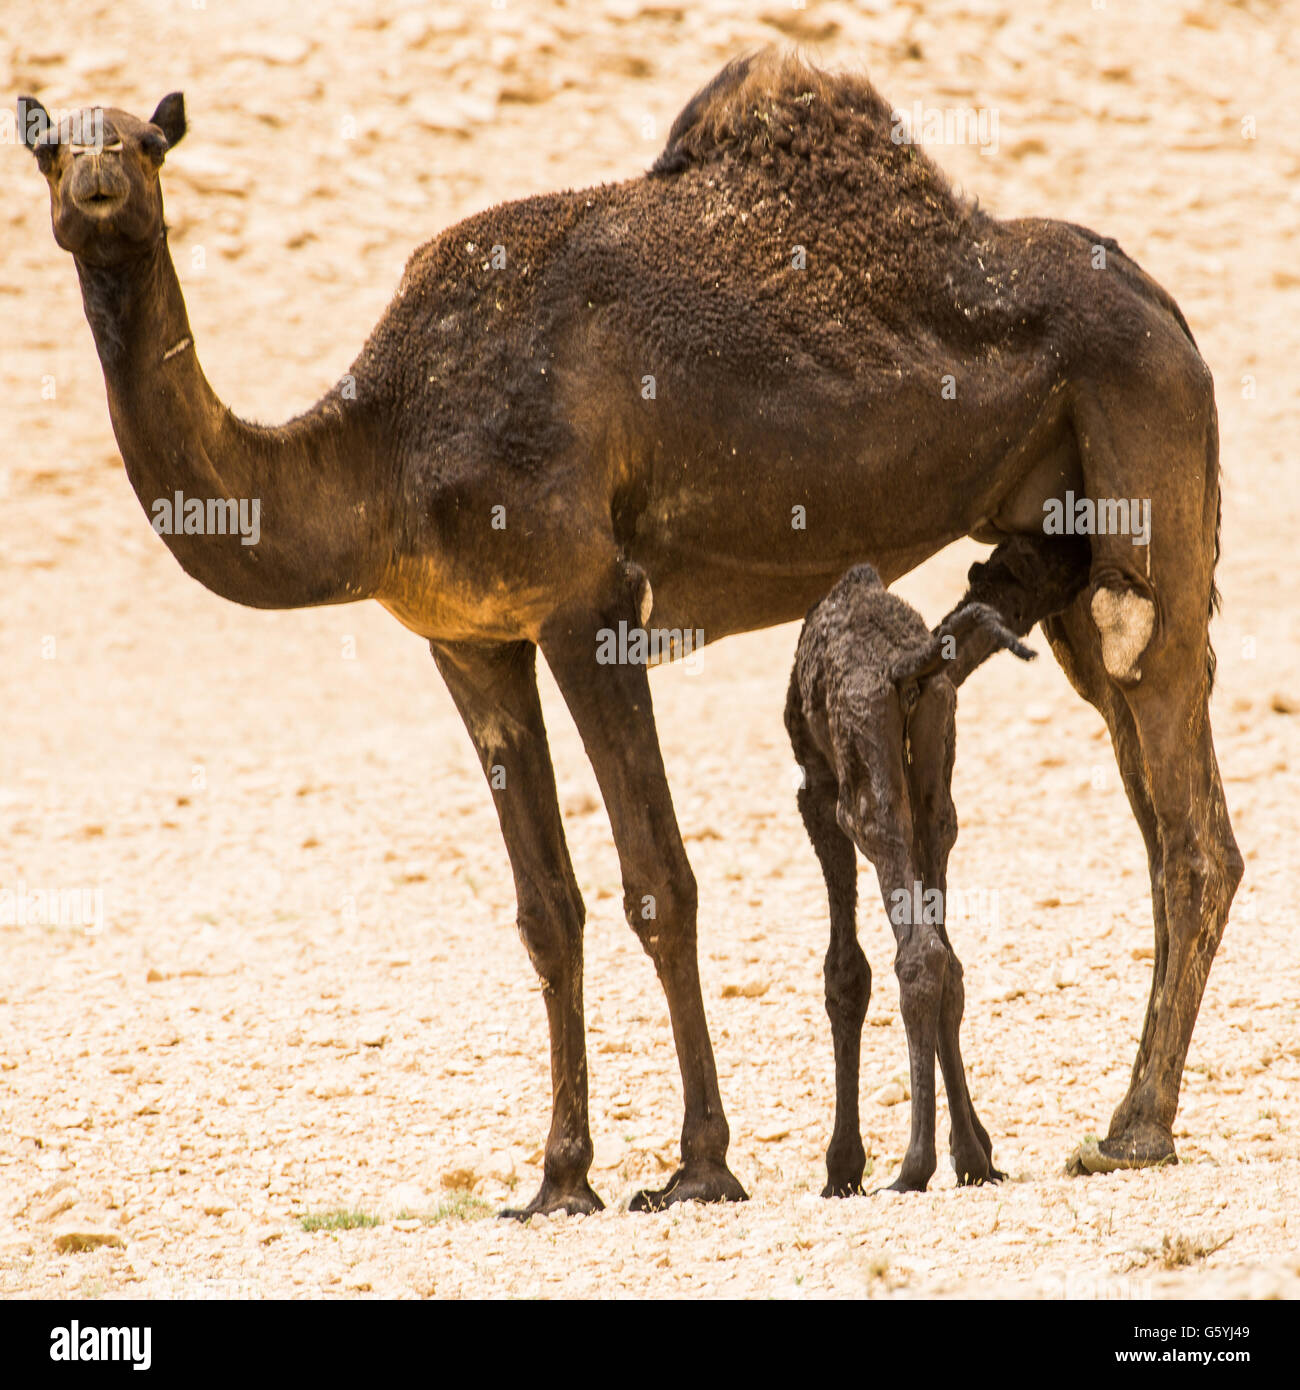 kamel and baby kamel in Saudi Arabia desert Stock Photo